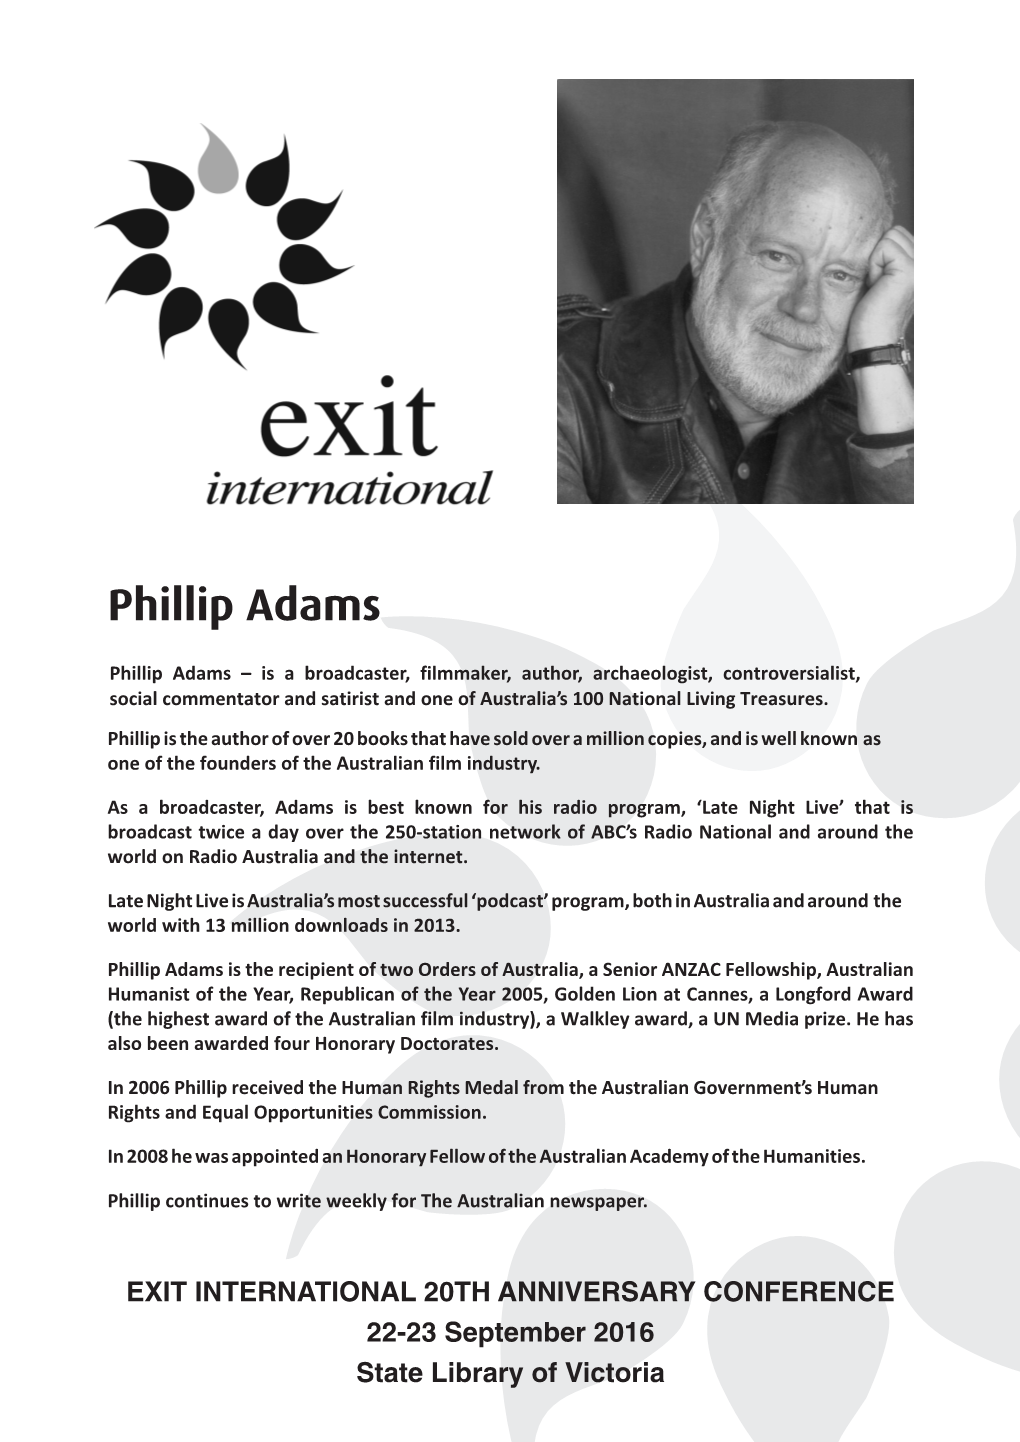 Phillip Adams